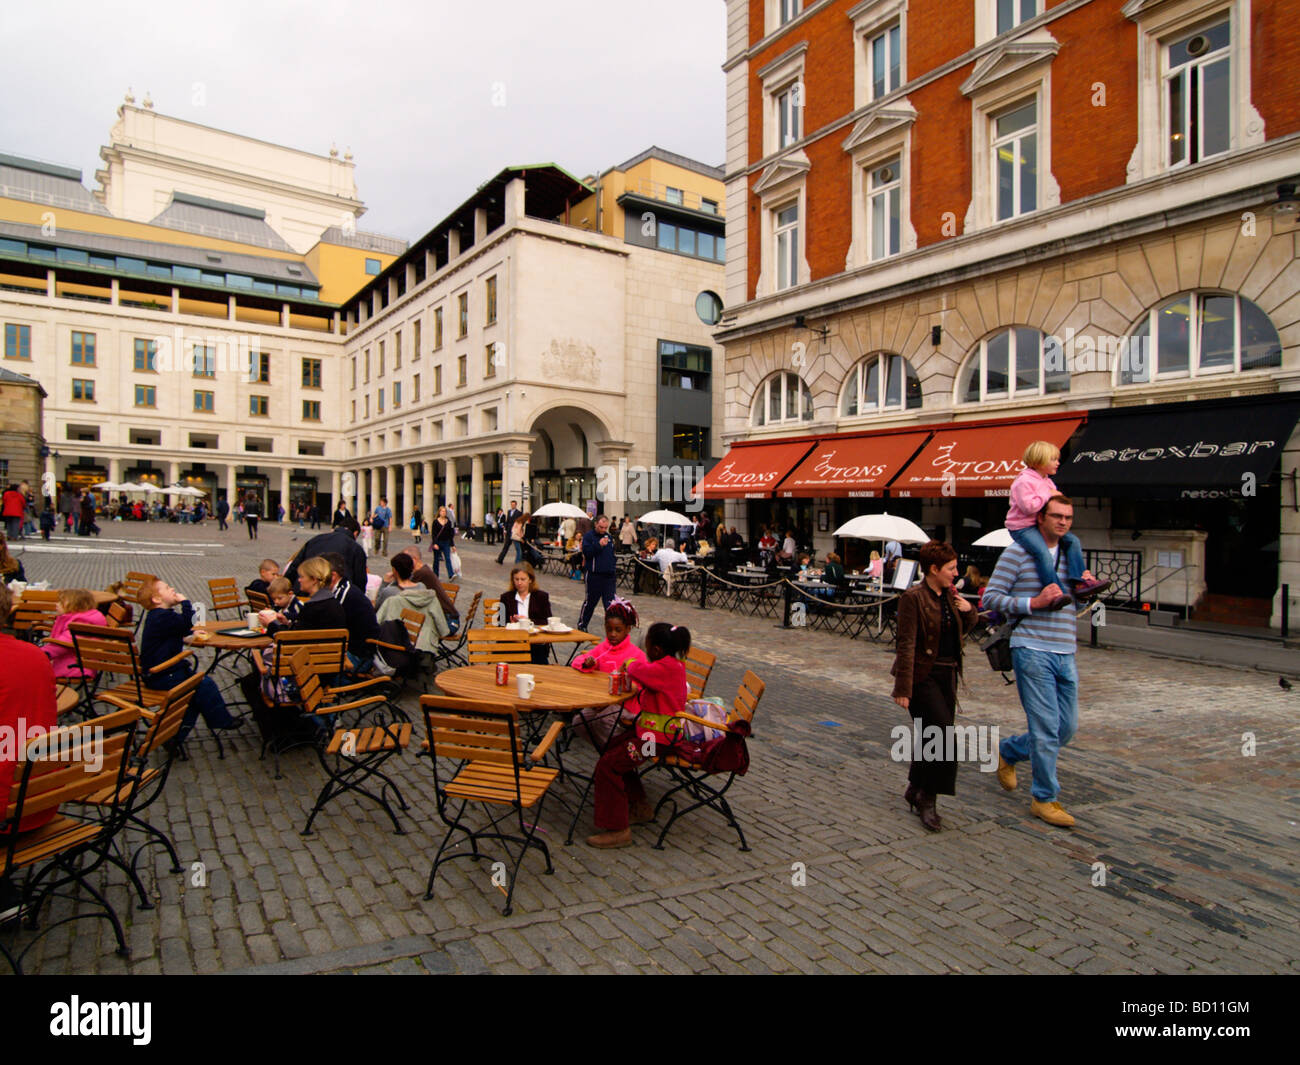 Giovane a piedi con i loro bambini e persone sedute presso il cafe' sul marciapiede in Covent Garden London REGNO UNITO Foto Stock